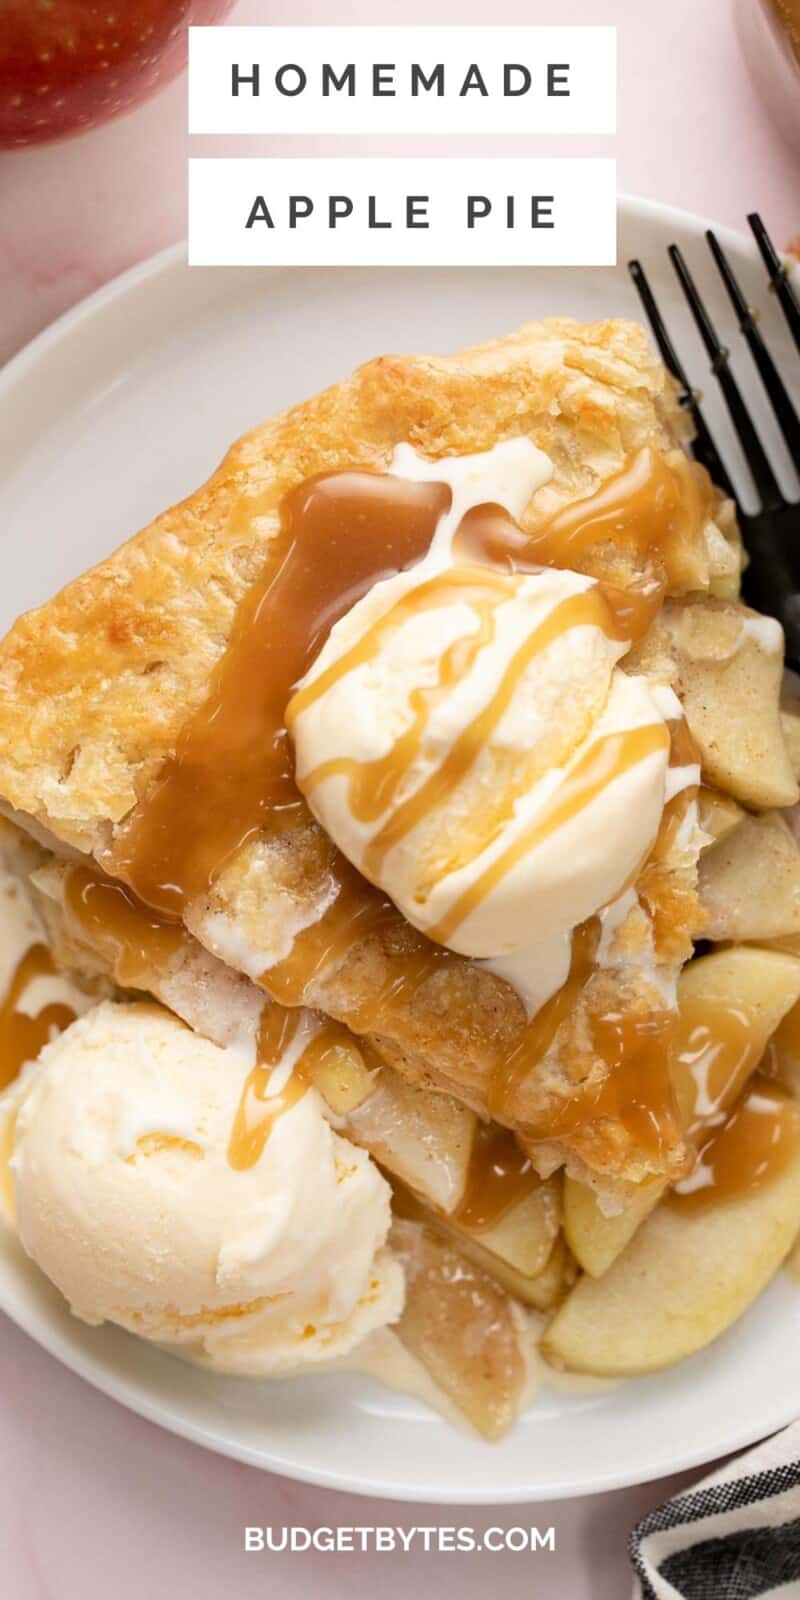 Scatto dall'alto di una fetta di torta di mele su un piatto bianco con due palline di gelato alla vaniglia e condita con salsa al caramello.